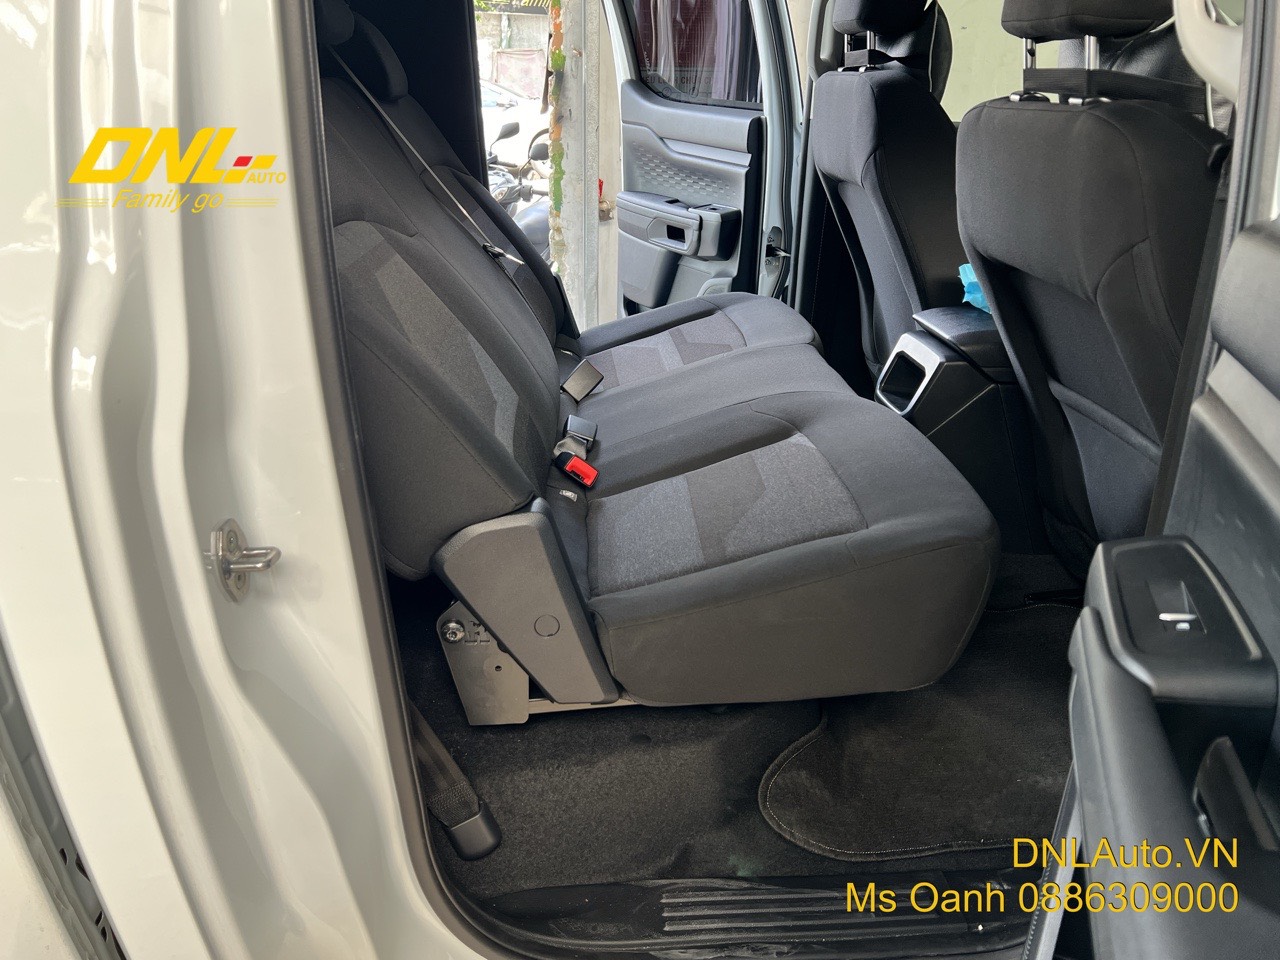 ghế chỉnh điện bestwyll dành cho ford ranger tại DNL Auto